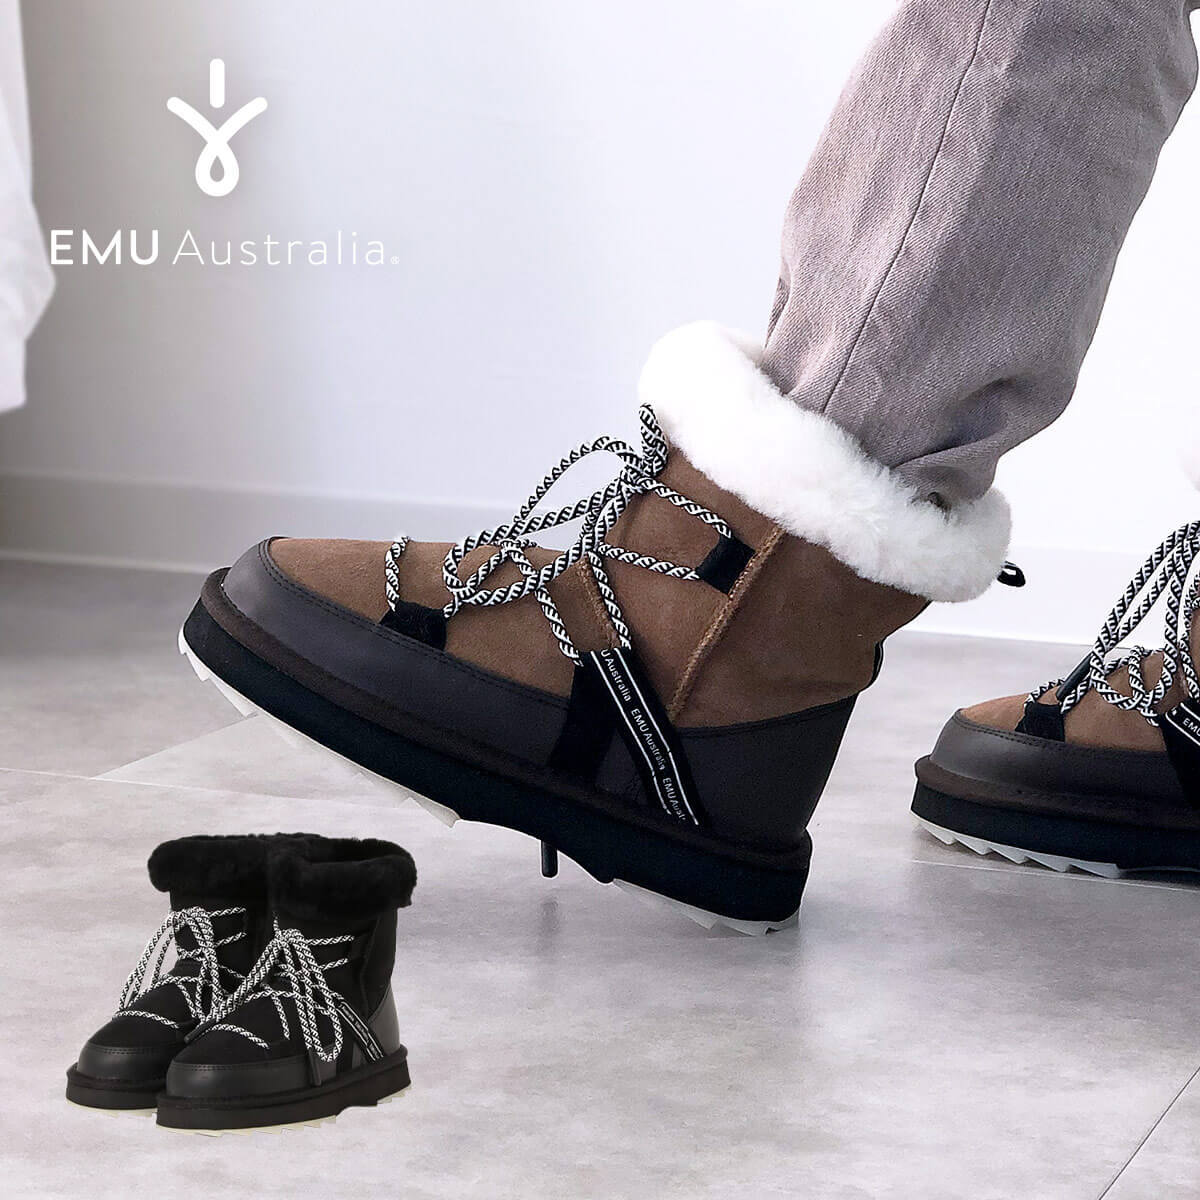 良質 EMU Pioneer 防水ブーツ W5 22cm エミュオーストラリア - linsar.com